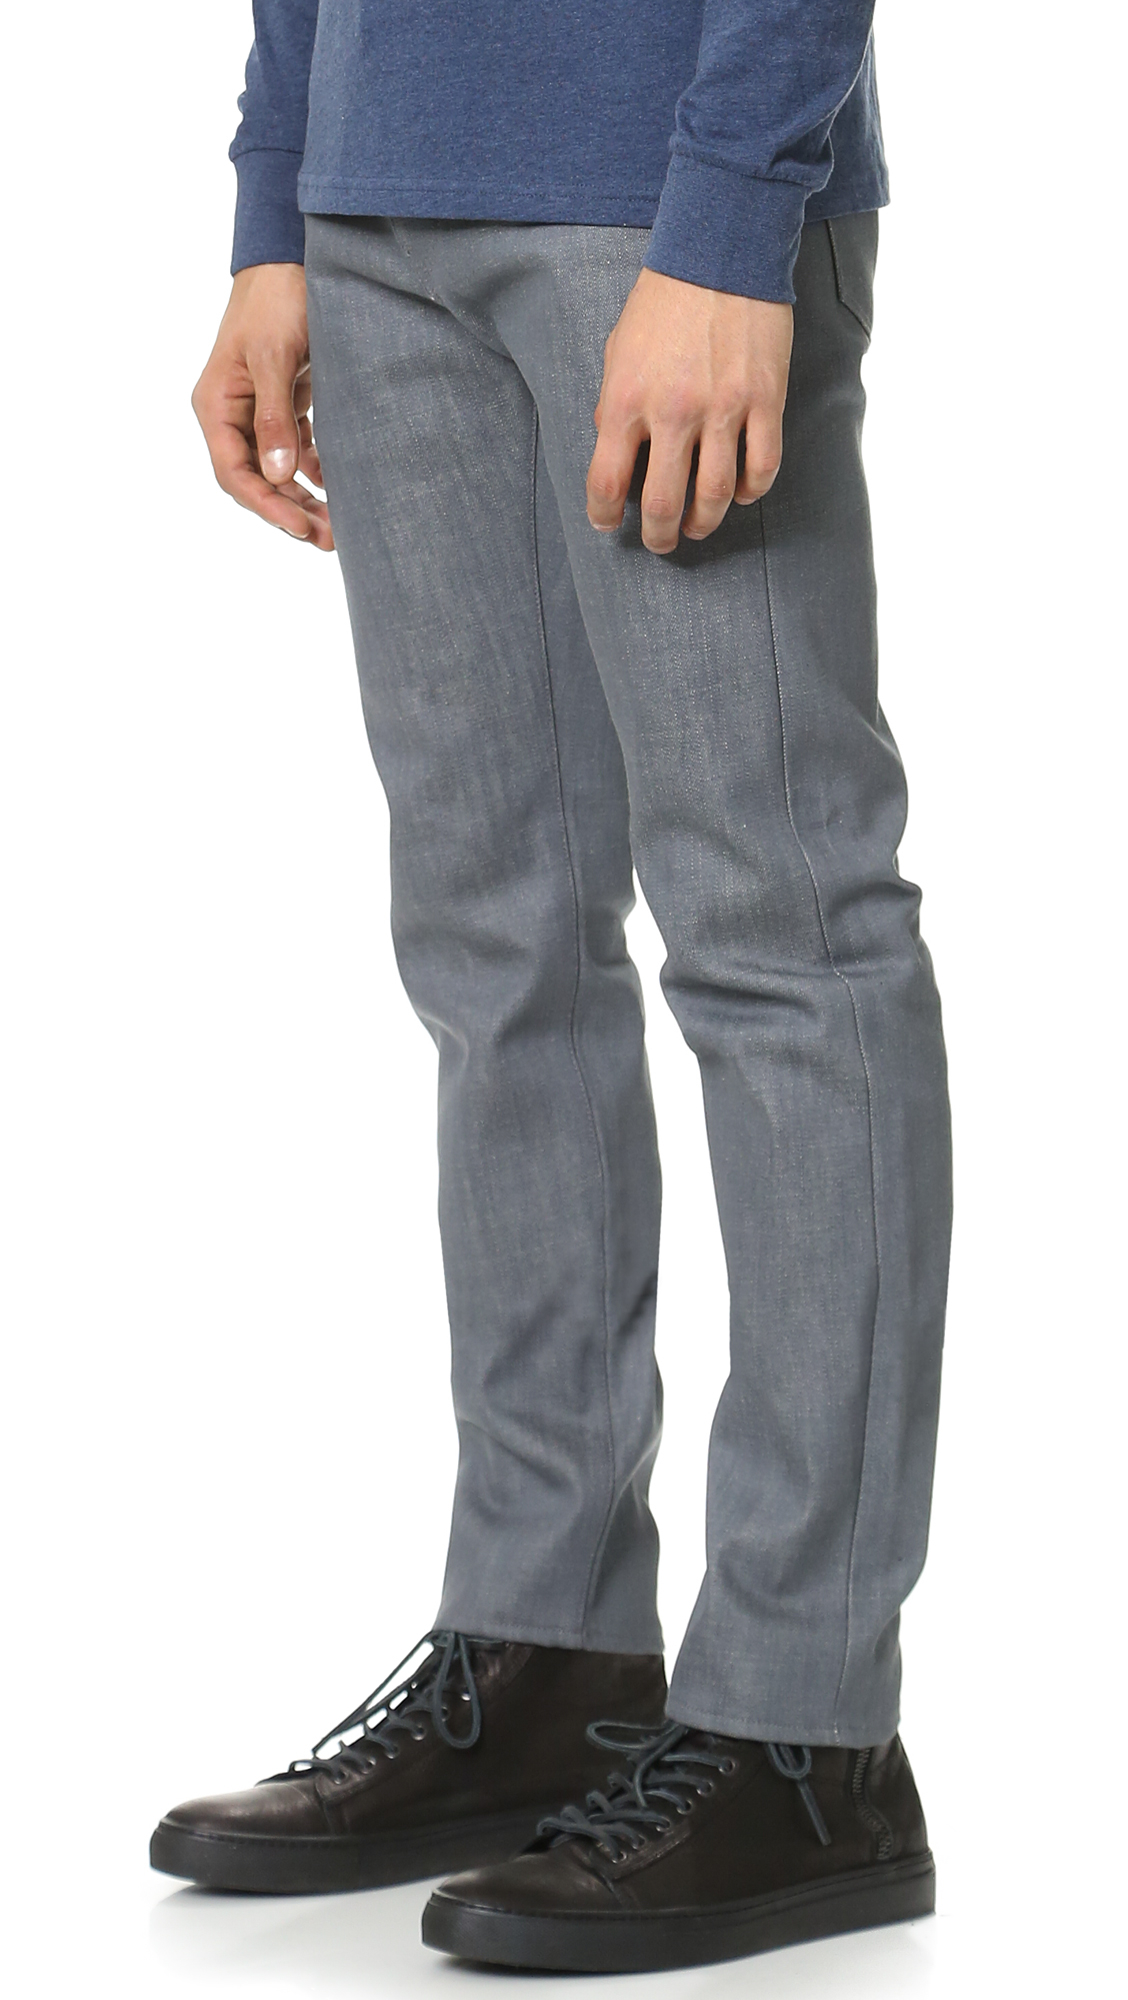 Carhartt WIP Denim Murphy Jeans in Grey (Gray) for Men - Lyst